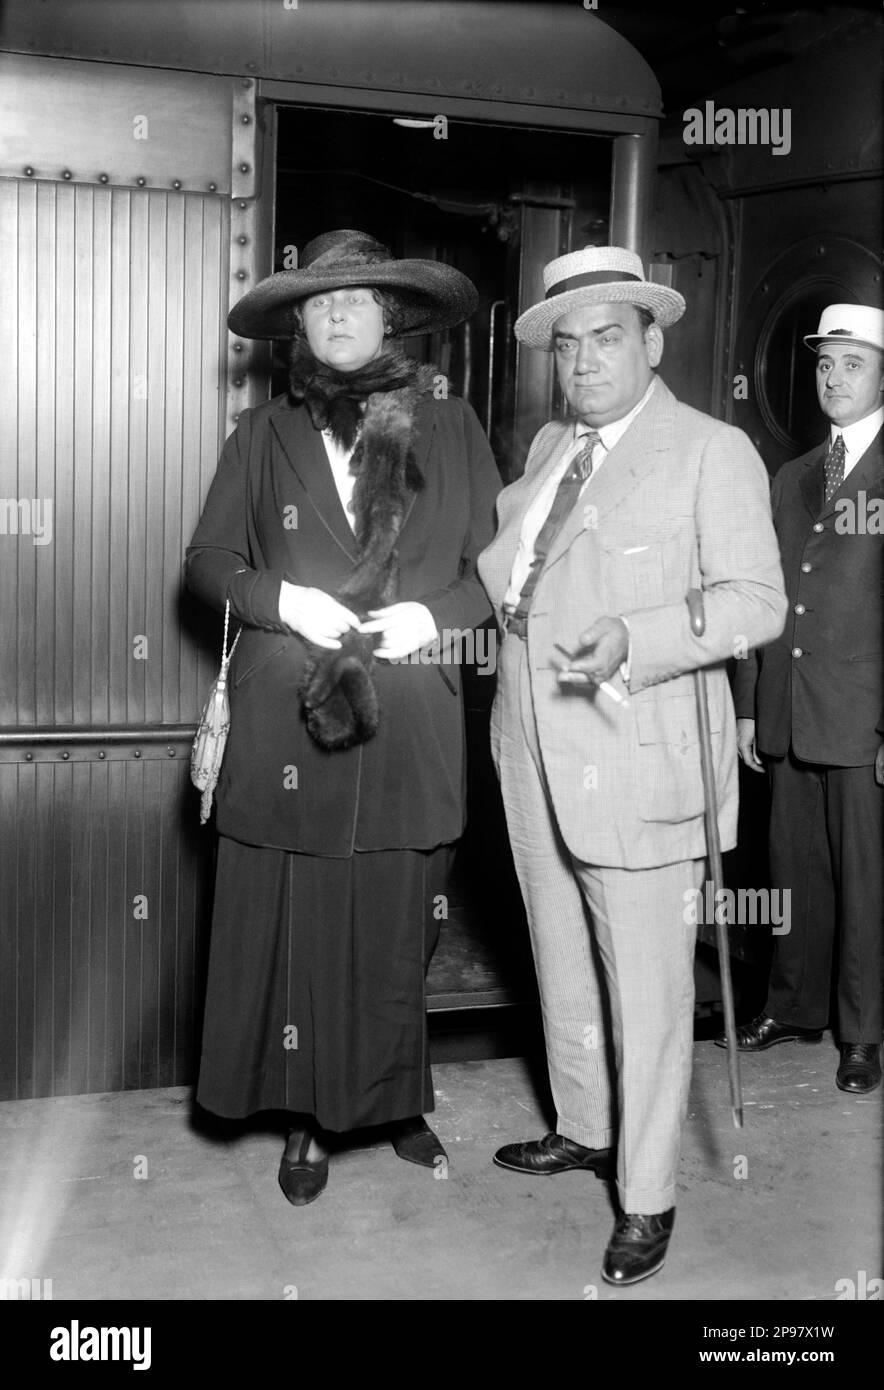 1919 Ca , New York , USA : der italienische Opernsänger Tenore ENRICO CARUSO ( Napoli 1873 - 1921 ) am Hauptbahnhof mit seiner 2. amerikanischen Frau Dorothy Benjamin ( 1893 - 1955 ), MUSICA CLASSICA - KLASSISCH - MUSIK - Portrait - Rituto - cappello - Hut - Krawatte - Cravatta - TENORE - OPERA LIRICA - TEATRO - THEATER - Pelliccia - Marilitos e Moglie - Paglietta - Bastone da passeggio - Zuckerrohr --- Archivio GBB Stockfoto